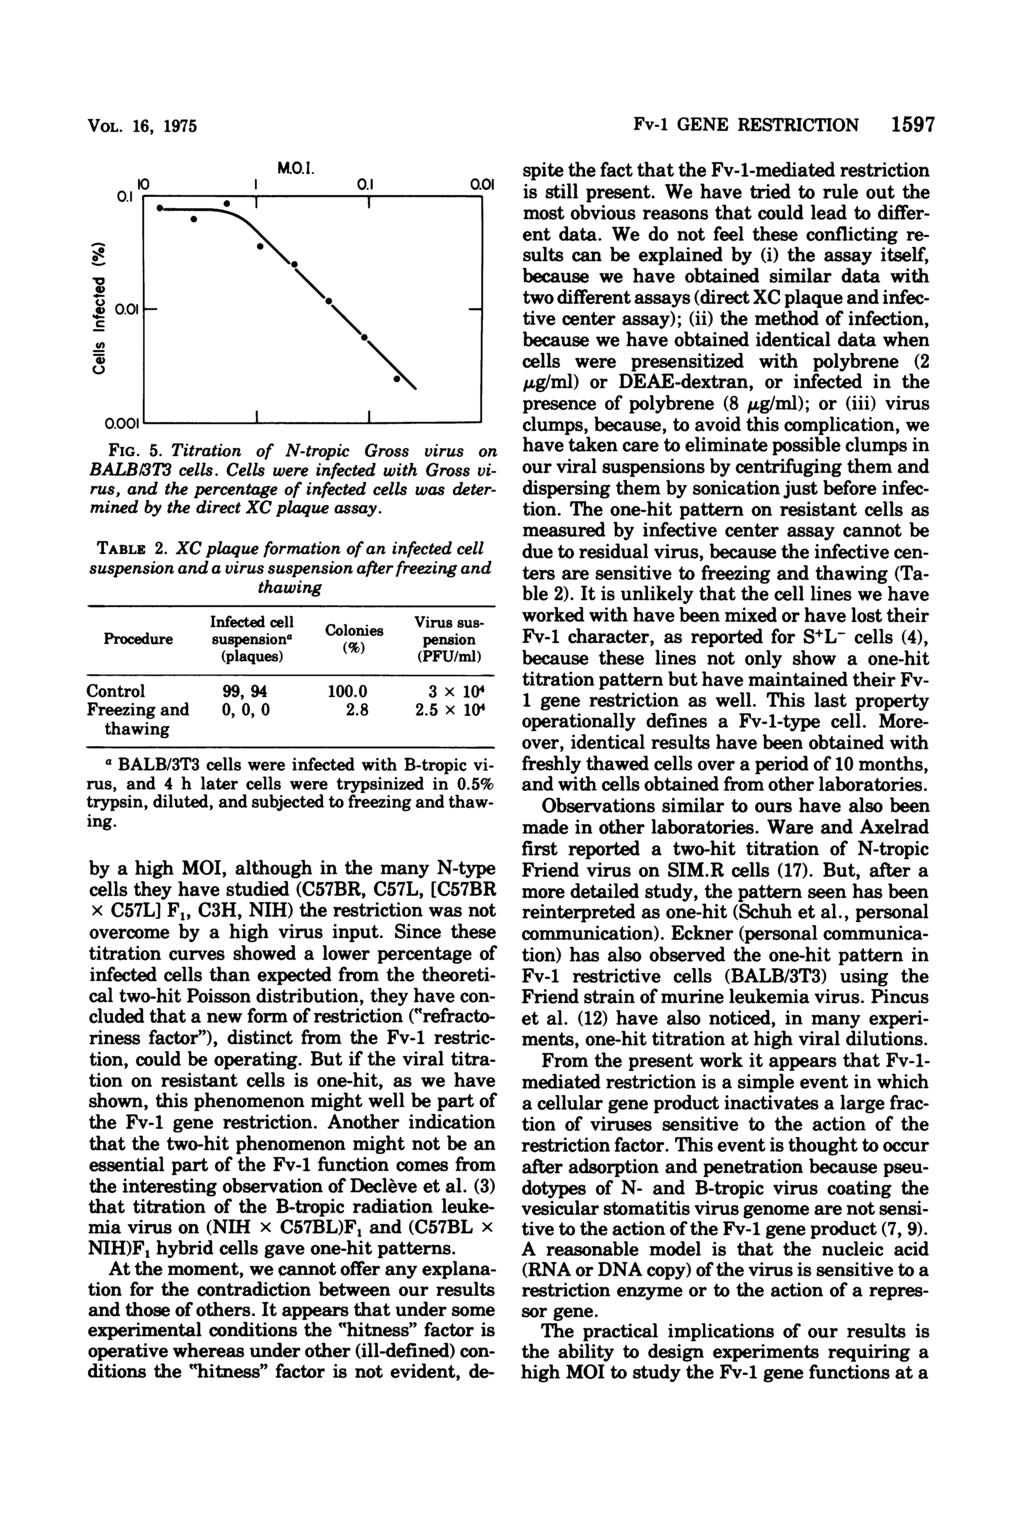 VOL. 16, 1975 cc C-) 10 0.1 r 0.01 0 l0 I M.O.I. \ \00 0.1 0.01 FIG. 5. Titration of N-tropic Gross virus on BALBh3T3 cells.